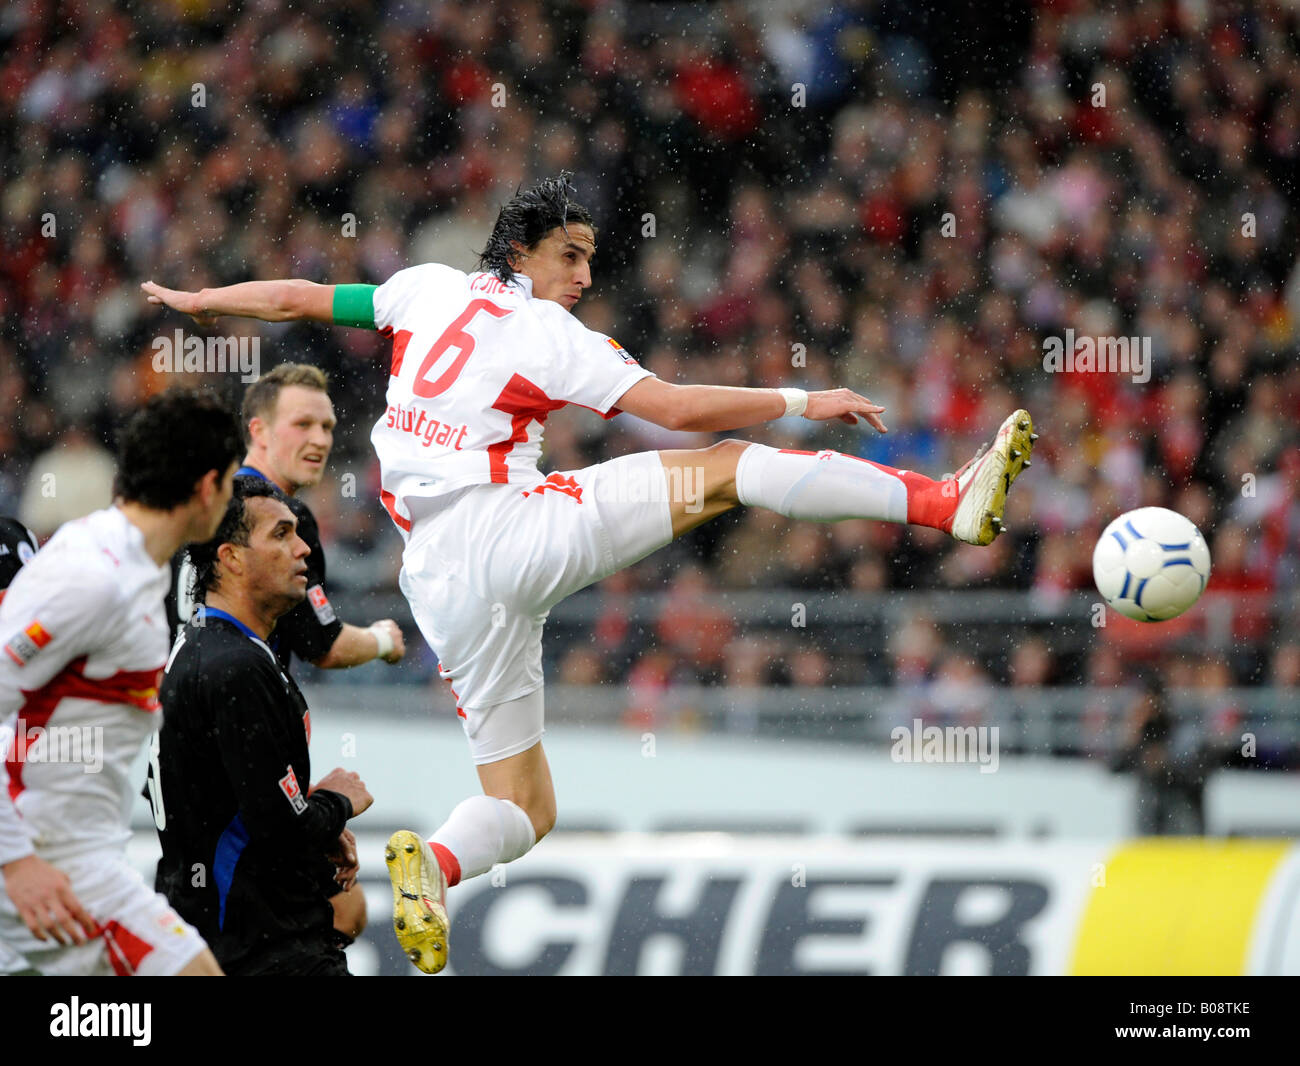 El VfB Stuttgart club de fútbol jugador Fernando Meira disparar a un objetivo Foto de stock